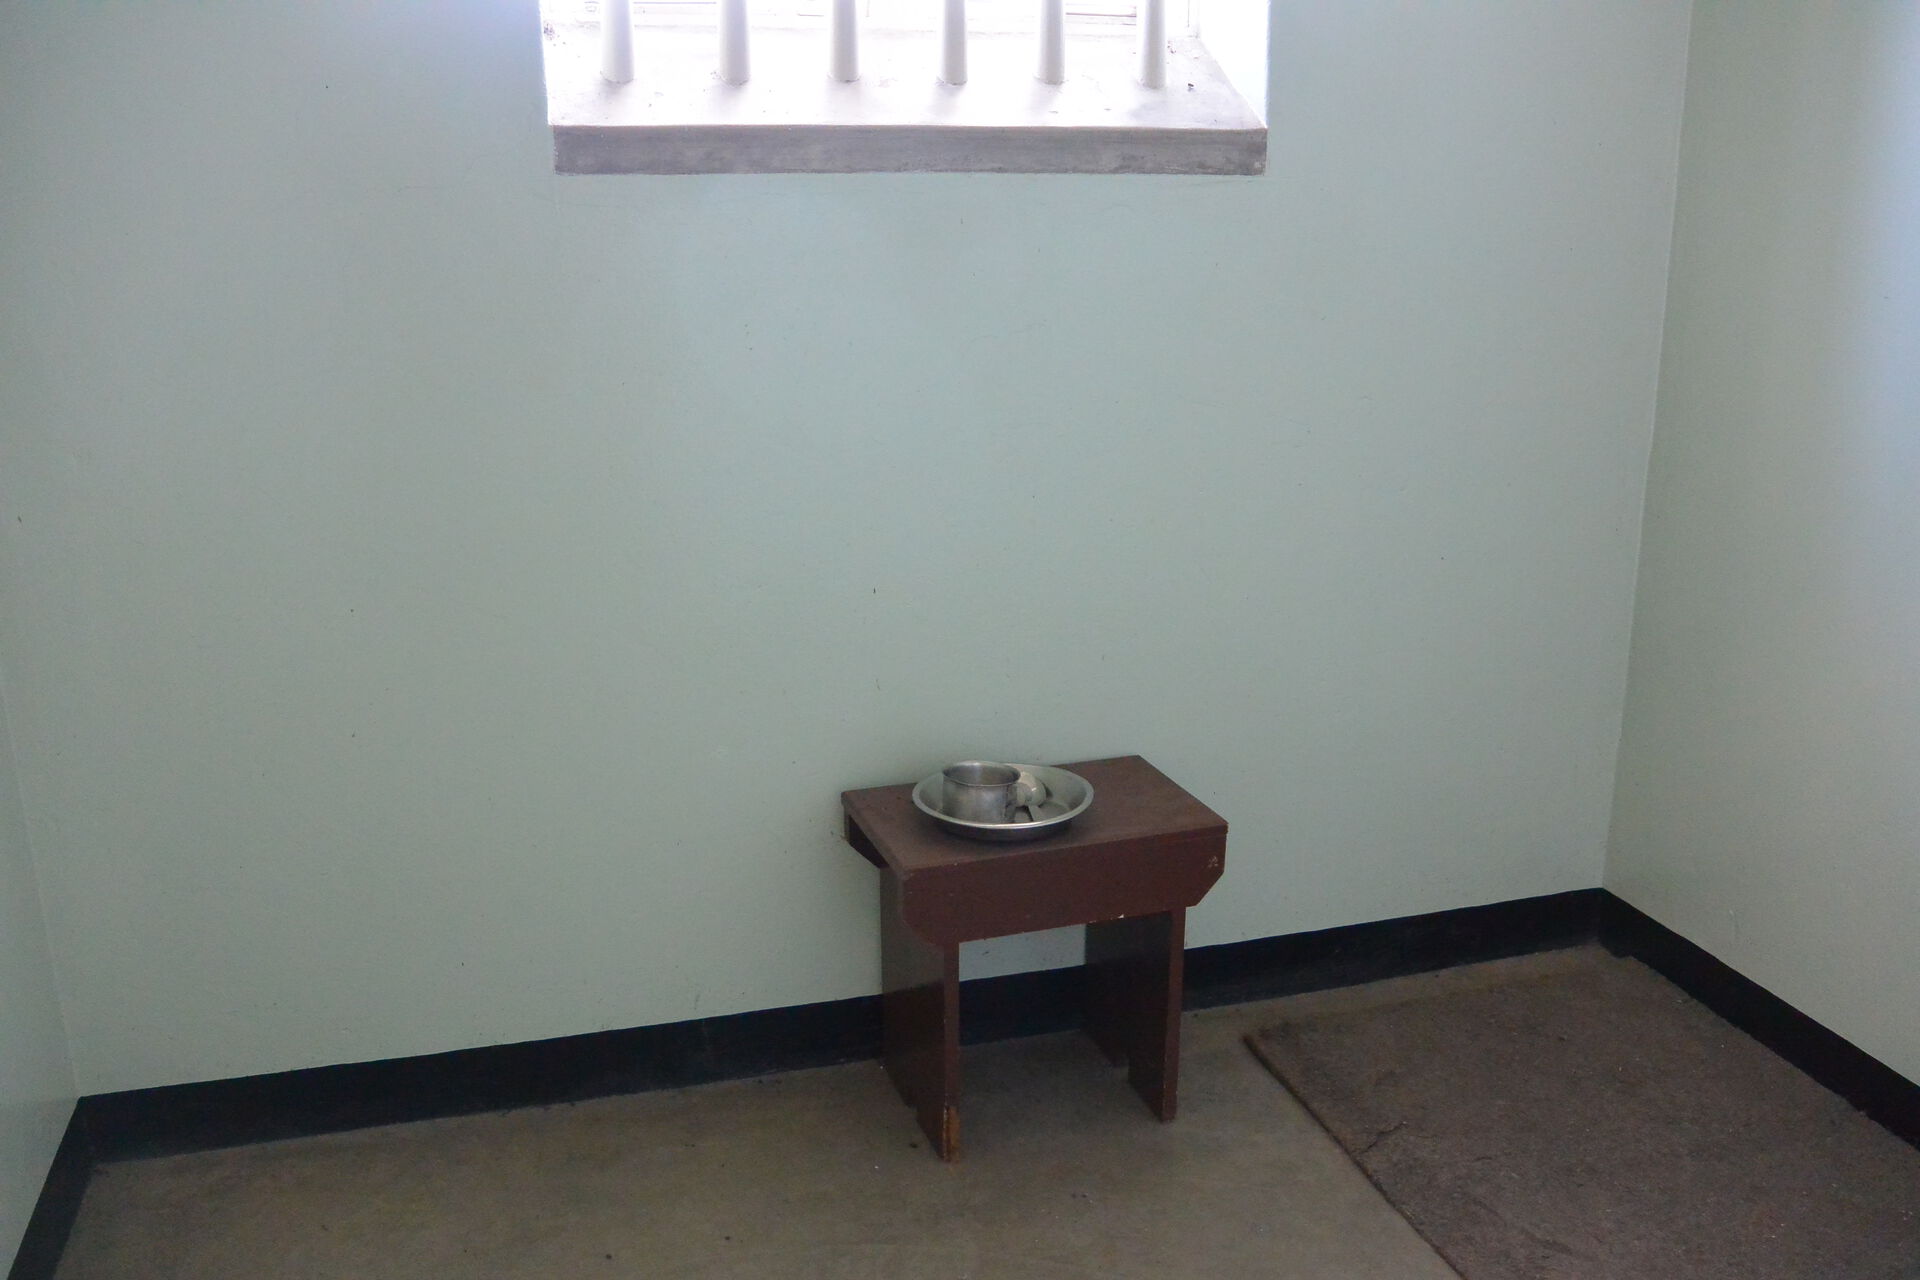 Et lite rom med vegger i mur og et vindu med gitter foran, en liten stol og et enkelt teppe.